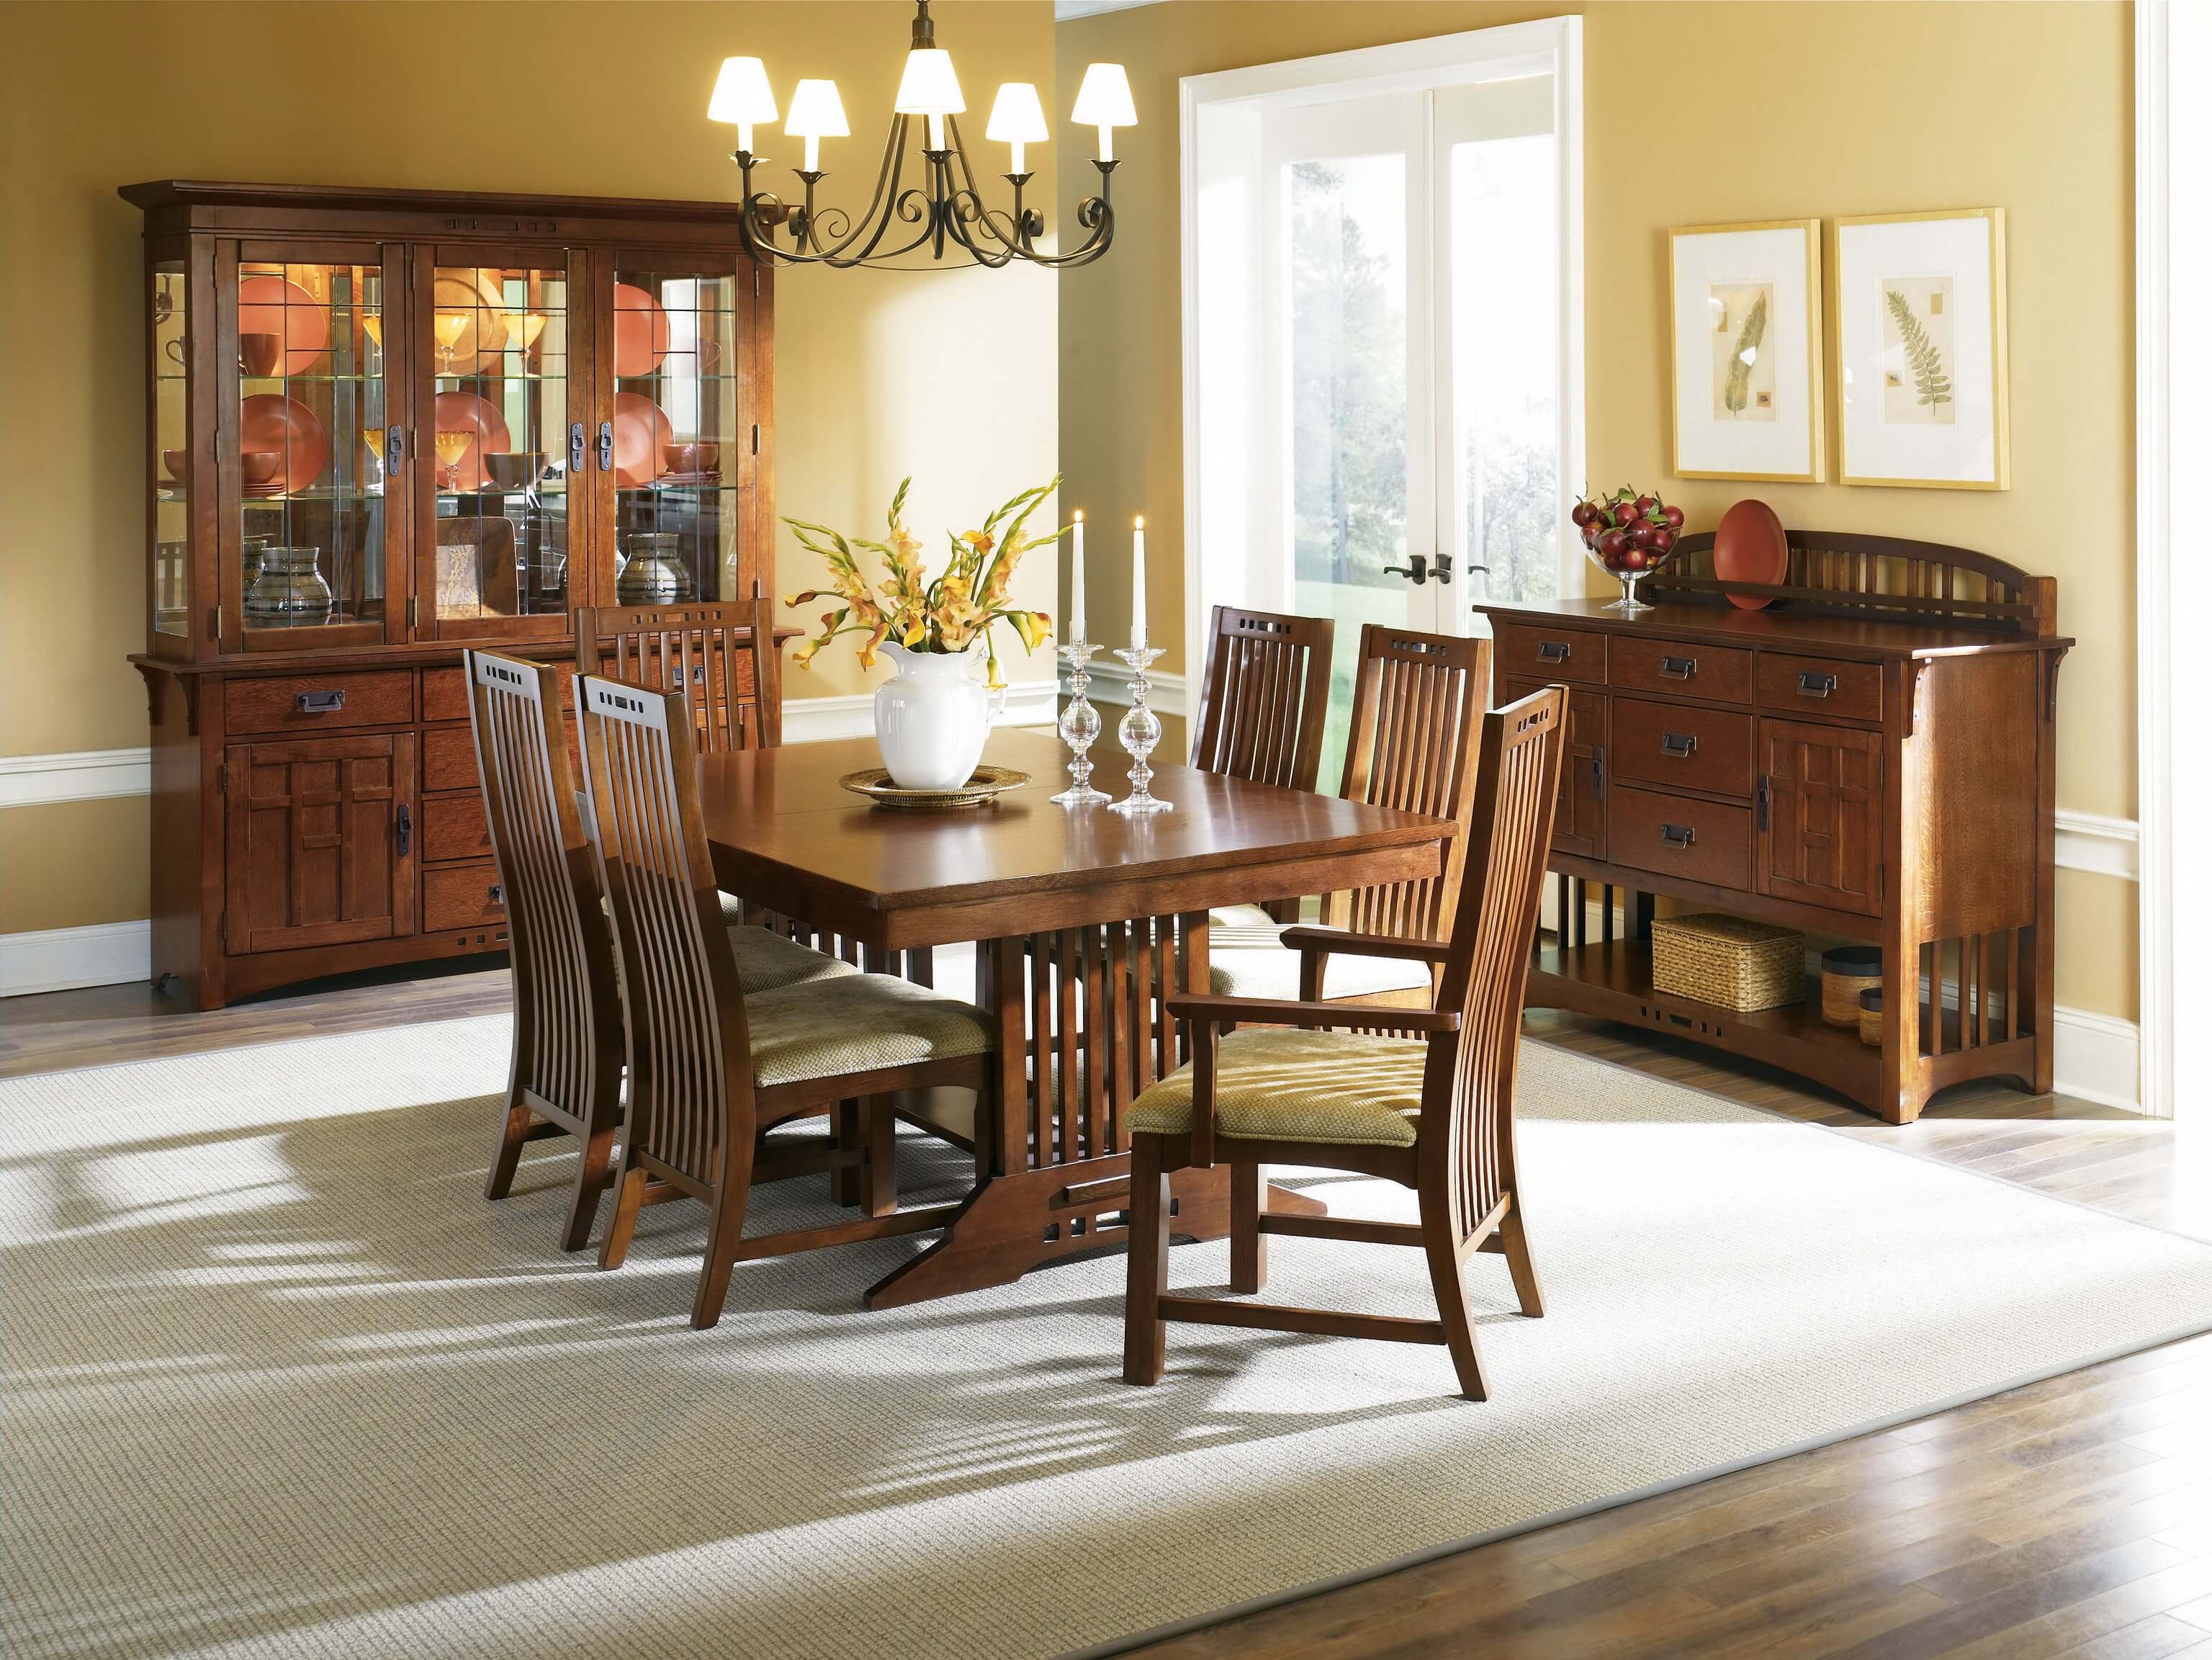 Wooden мебель. Деревянная мебель в интерьере. Стол для гостиной. Интерьер гостиной со столом и стульями. Деревянные столы для гостиной.